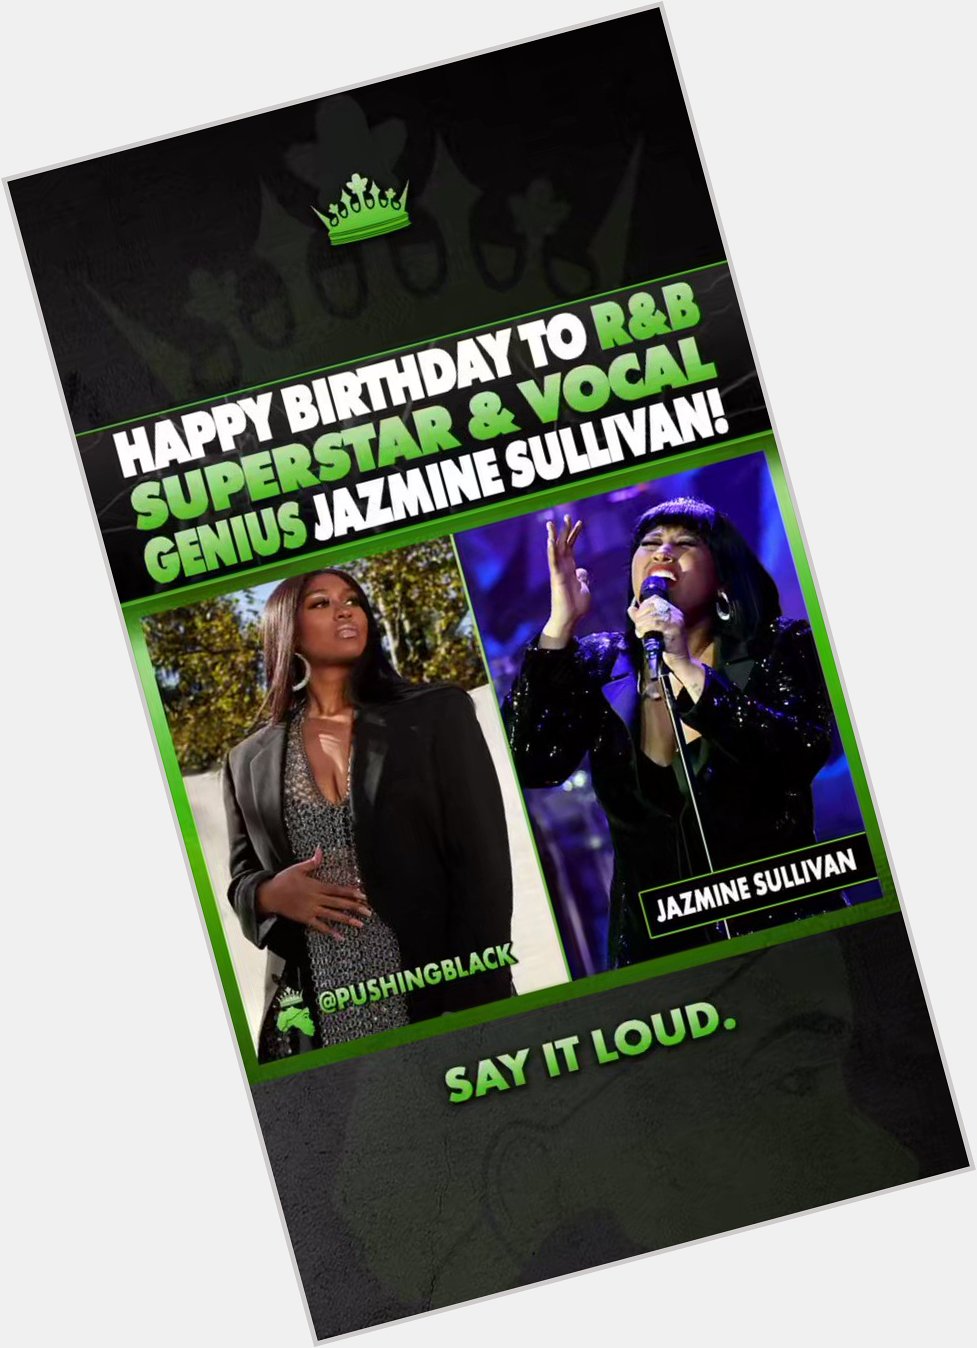 Happy birthday to R&B superstar & vocal genius Jazmine Sullivan! 